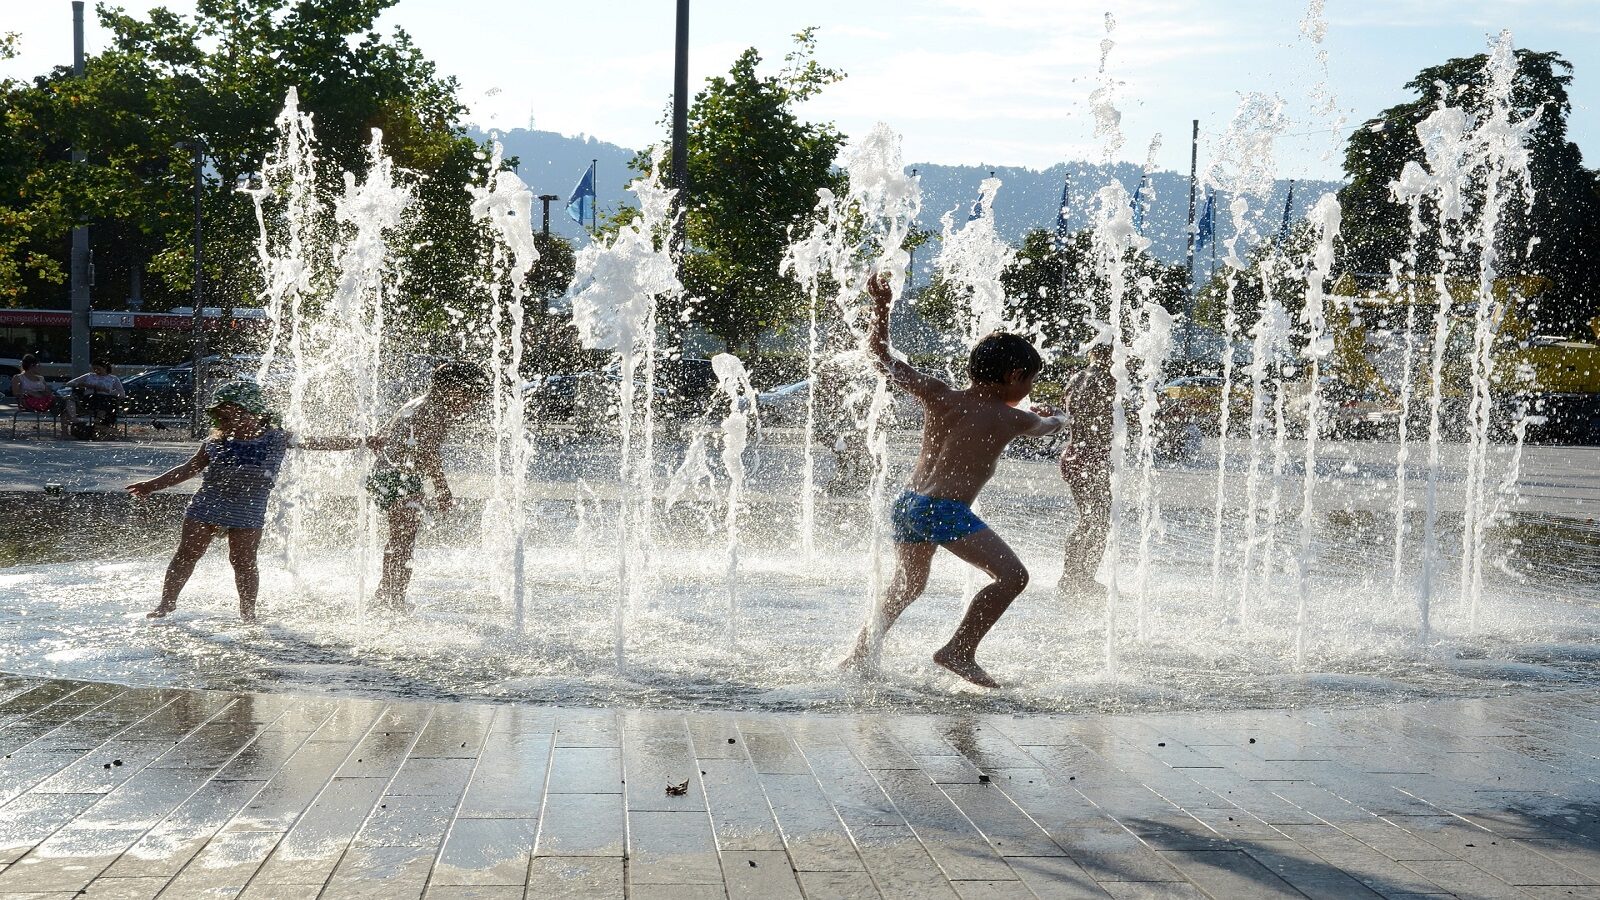 Jeu d'eau enfant - animation été plage urbaine centre ville paris ile de france normandie